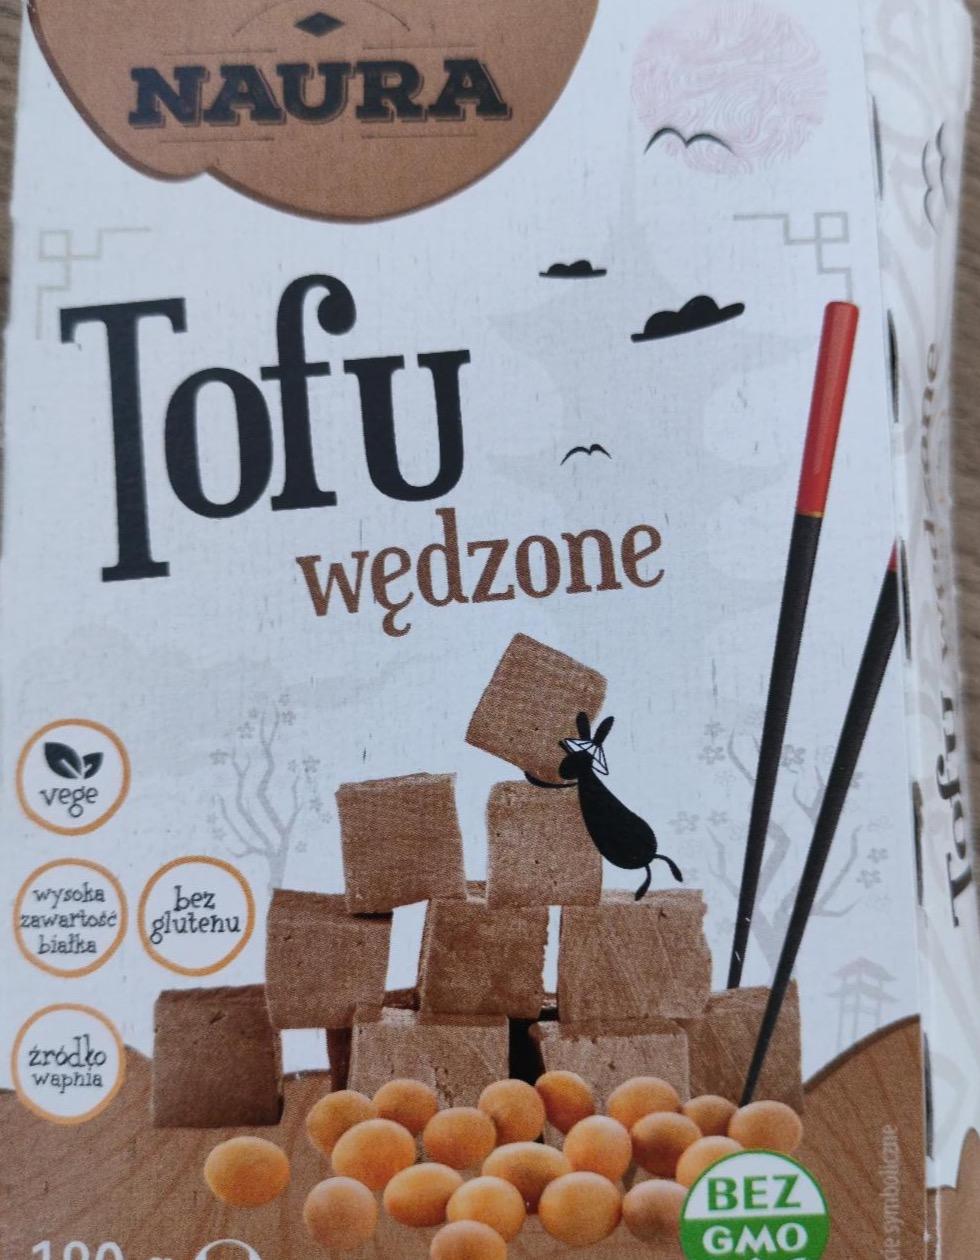 Zdjęcia - Tofu wędzone Natura